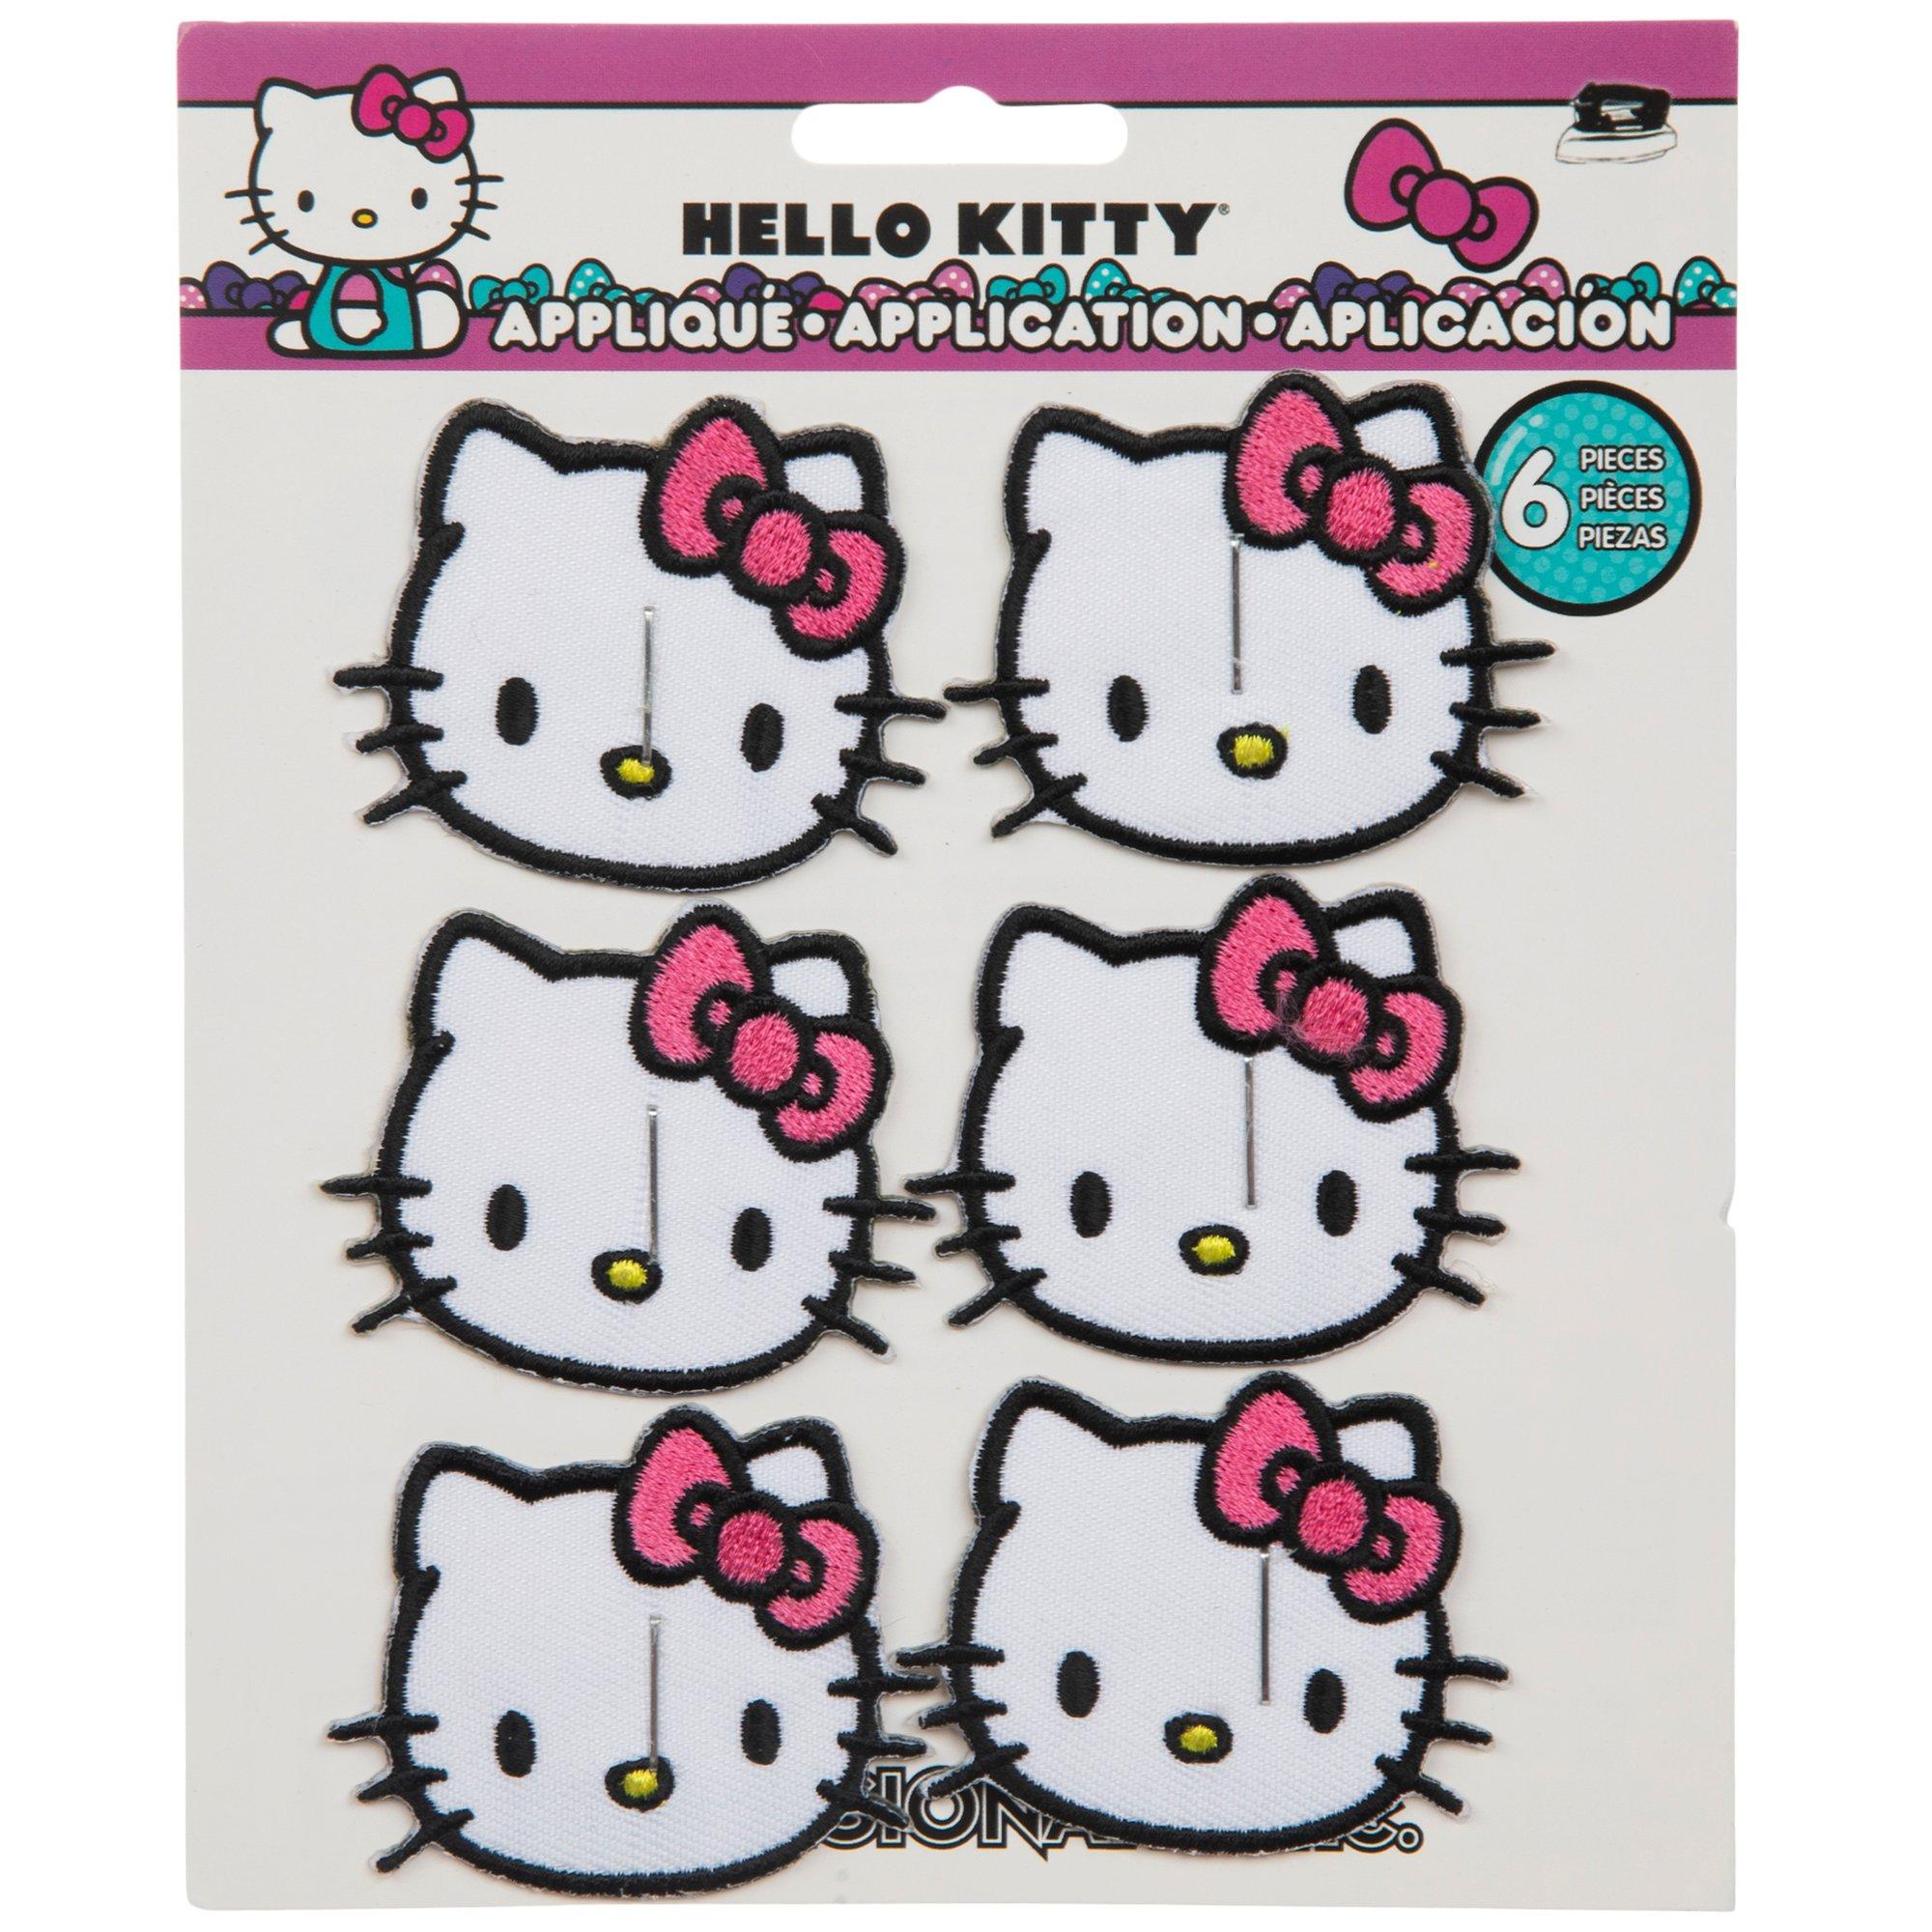 Sanrio Christmas Cartoon Hello Kitty Patches Iron on Heat